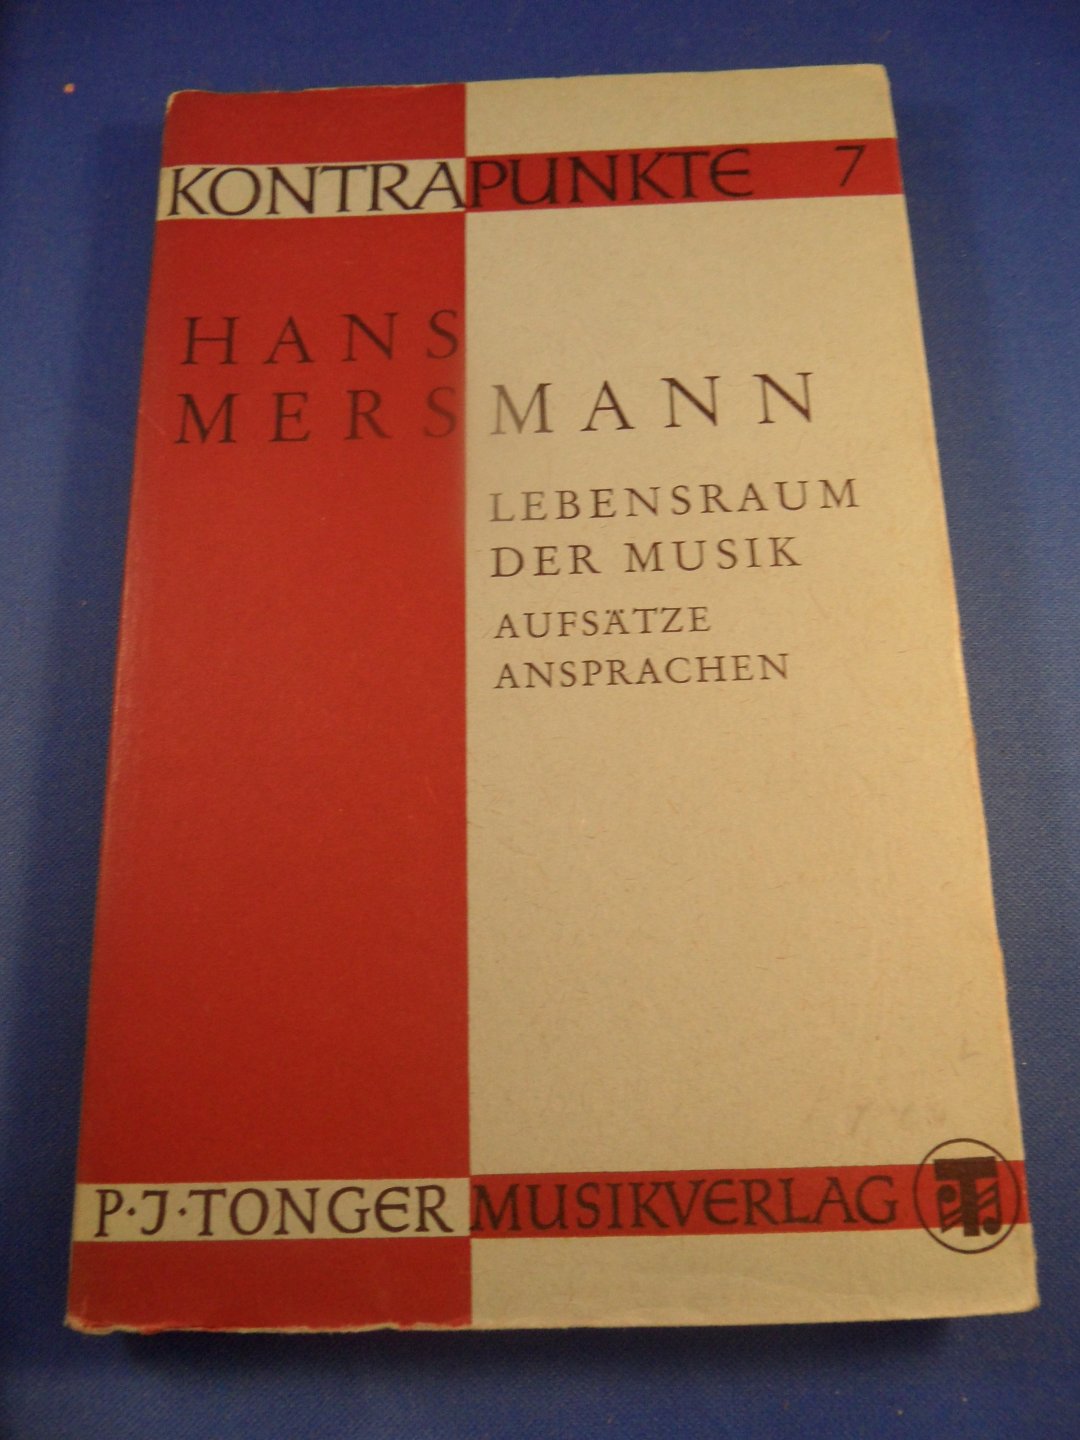 Mersmann, Hans  - Lebensraum der Musik